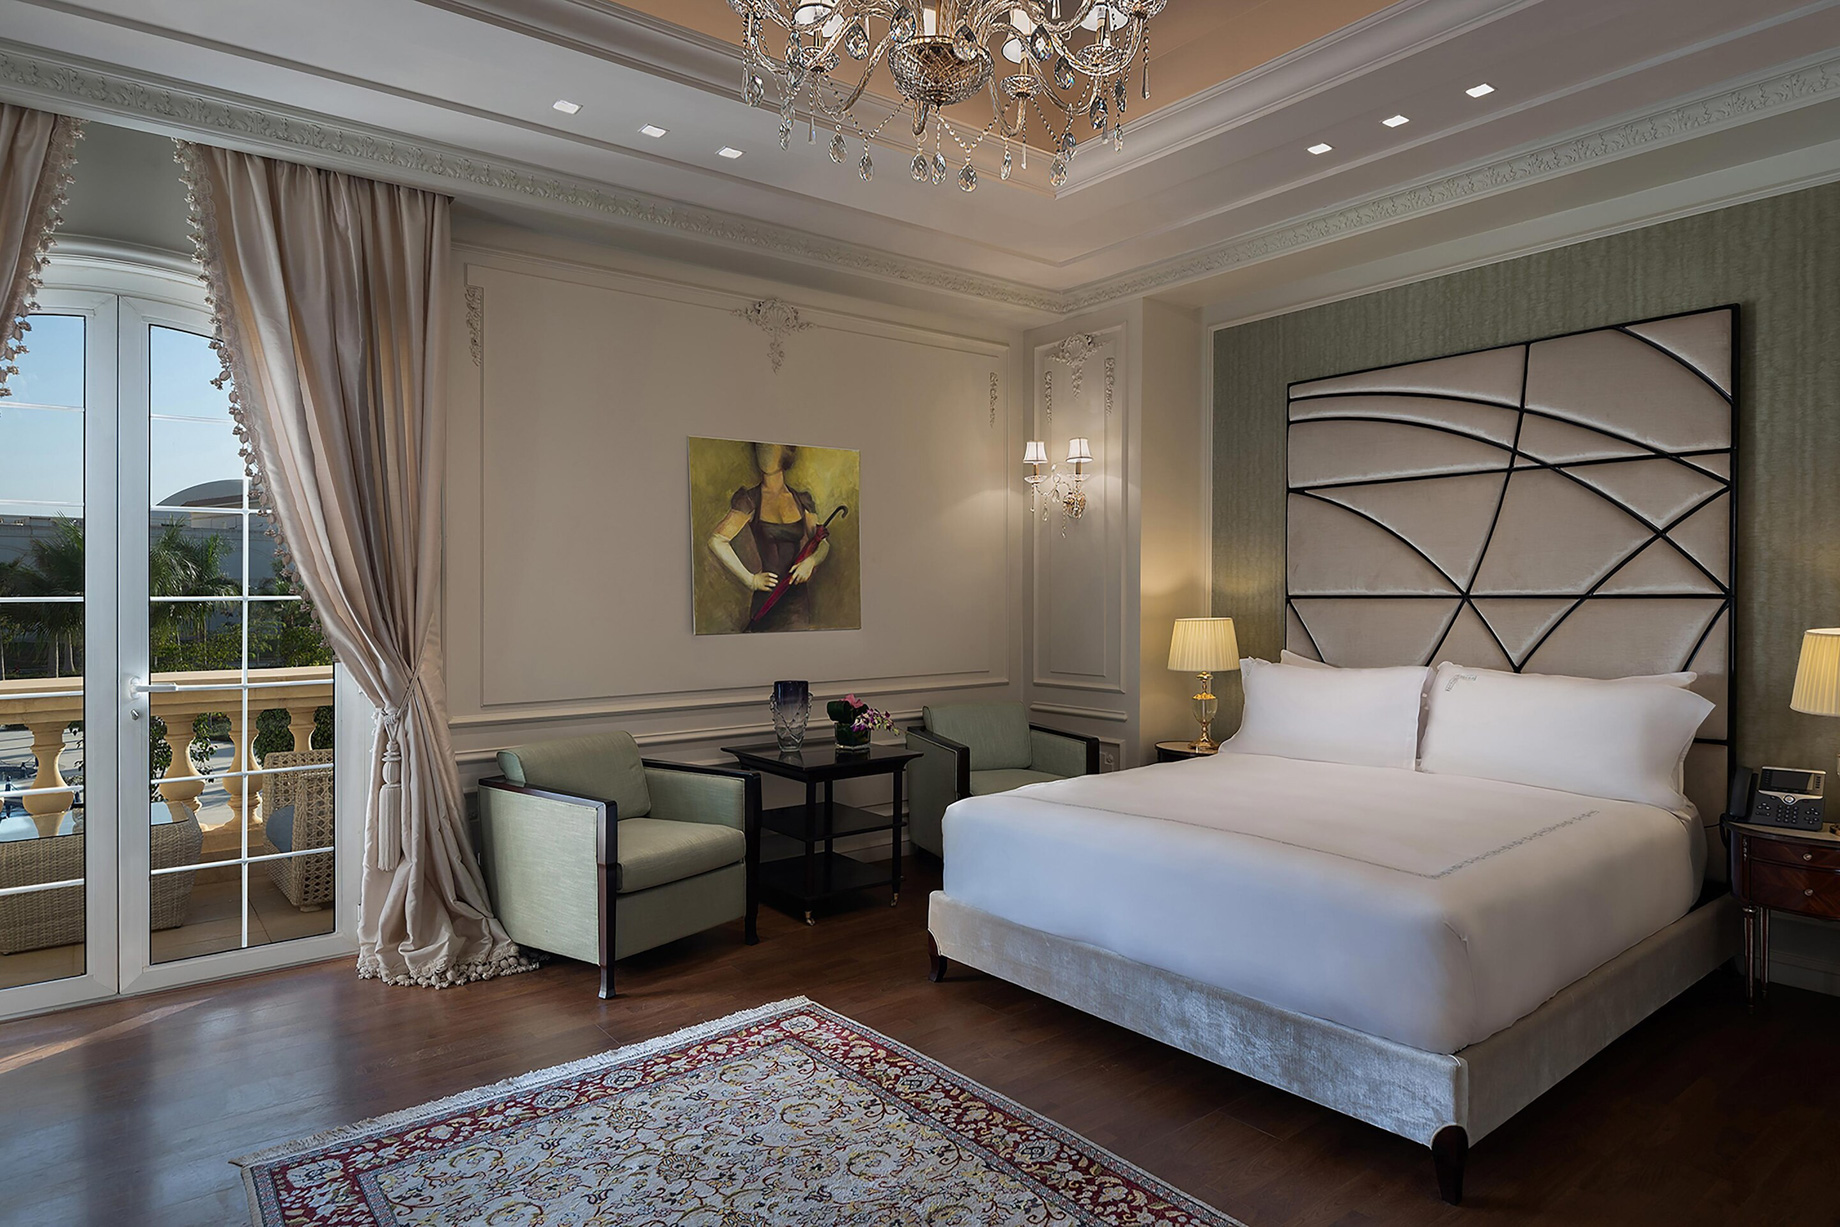 The St. Regis Almasa Hotel - Cairo, Egypt - Villa Master Bedroom